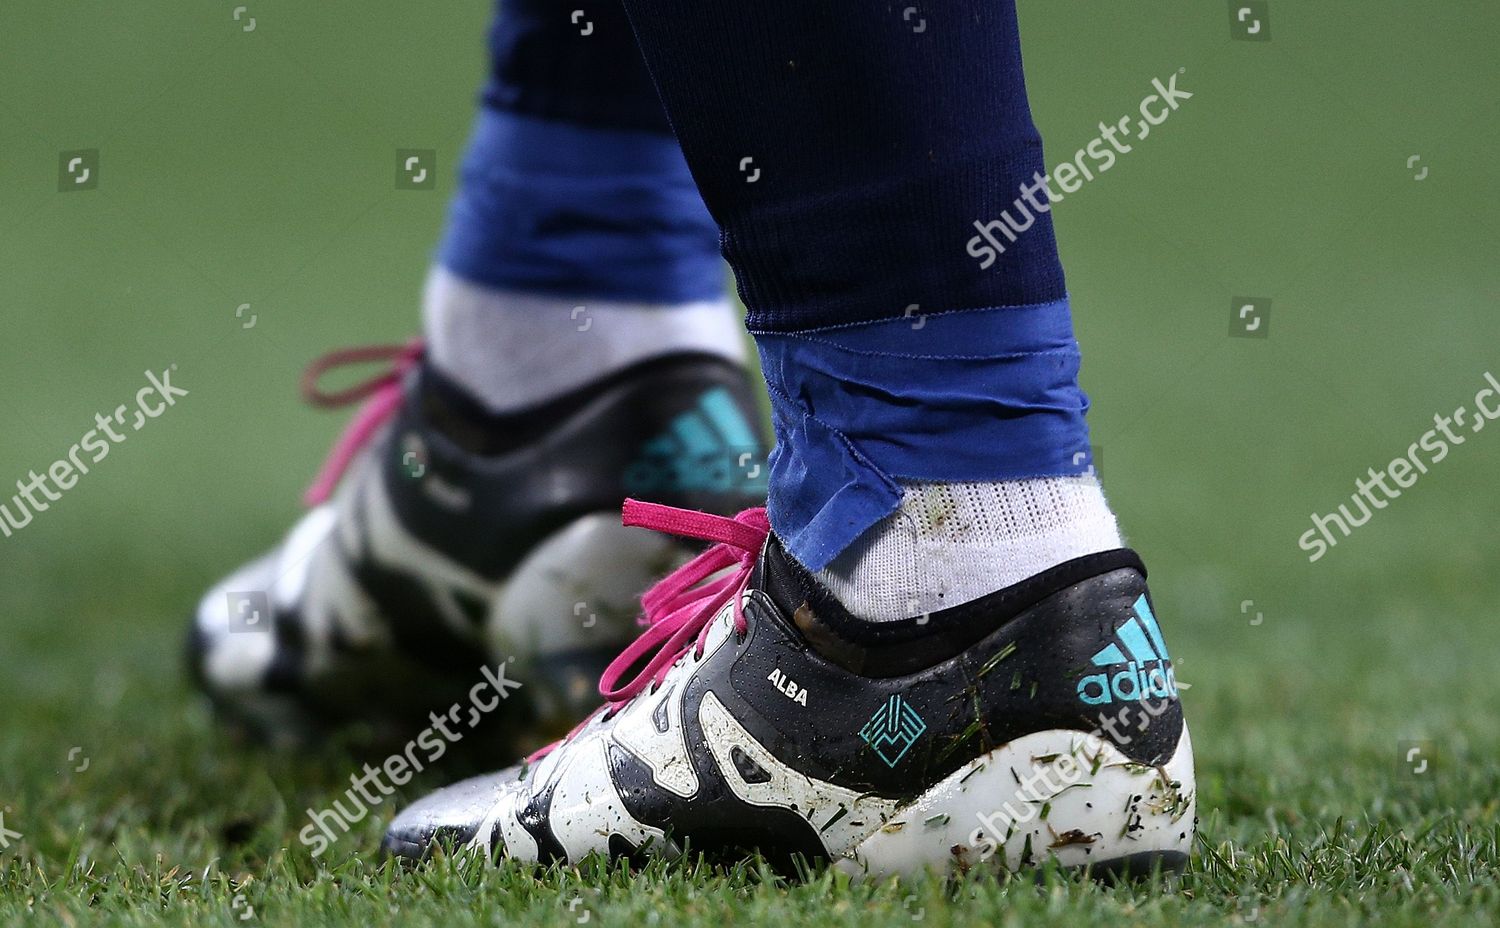 Adidas Boots Gareth Bale Real Madrid Foto de de contenido editorial: imagen de stock Shutterstock